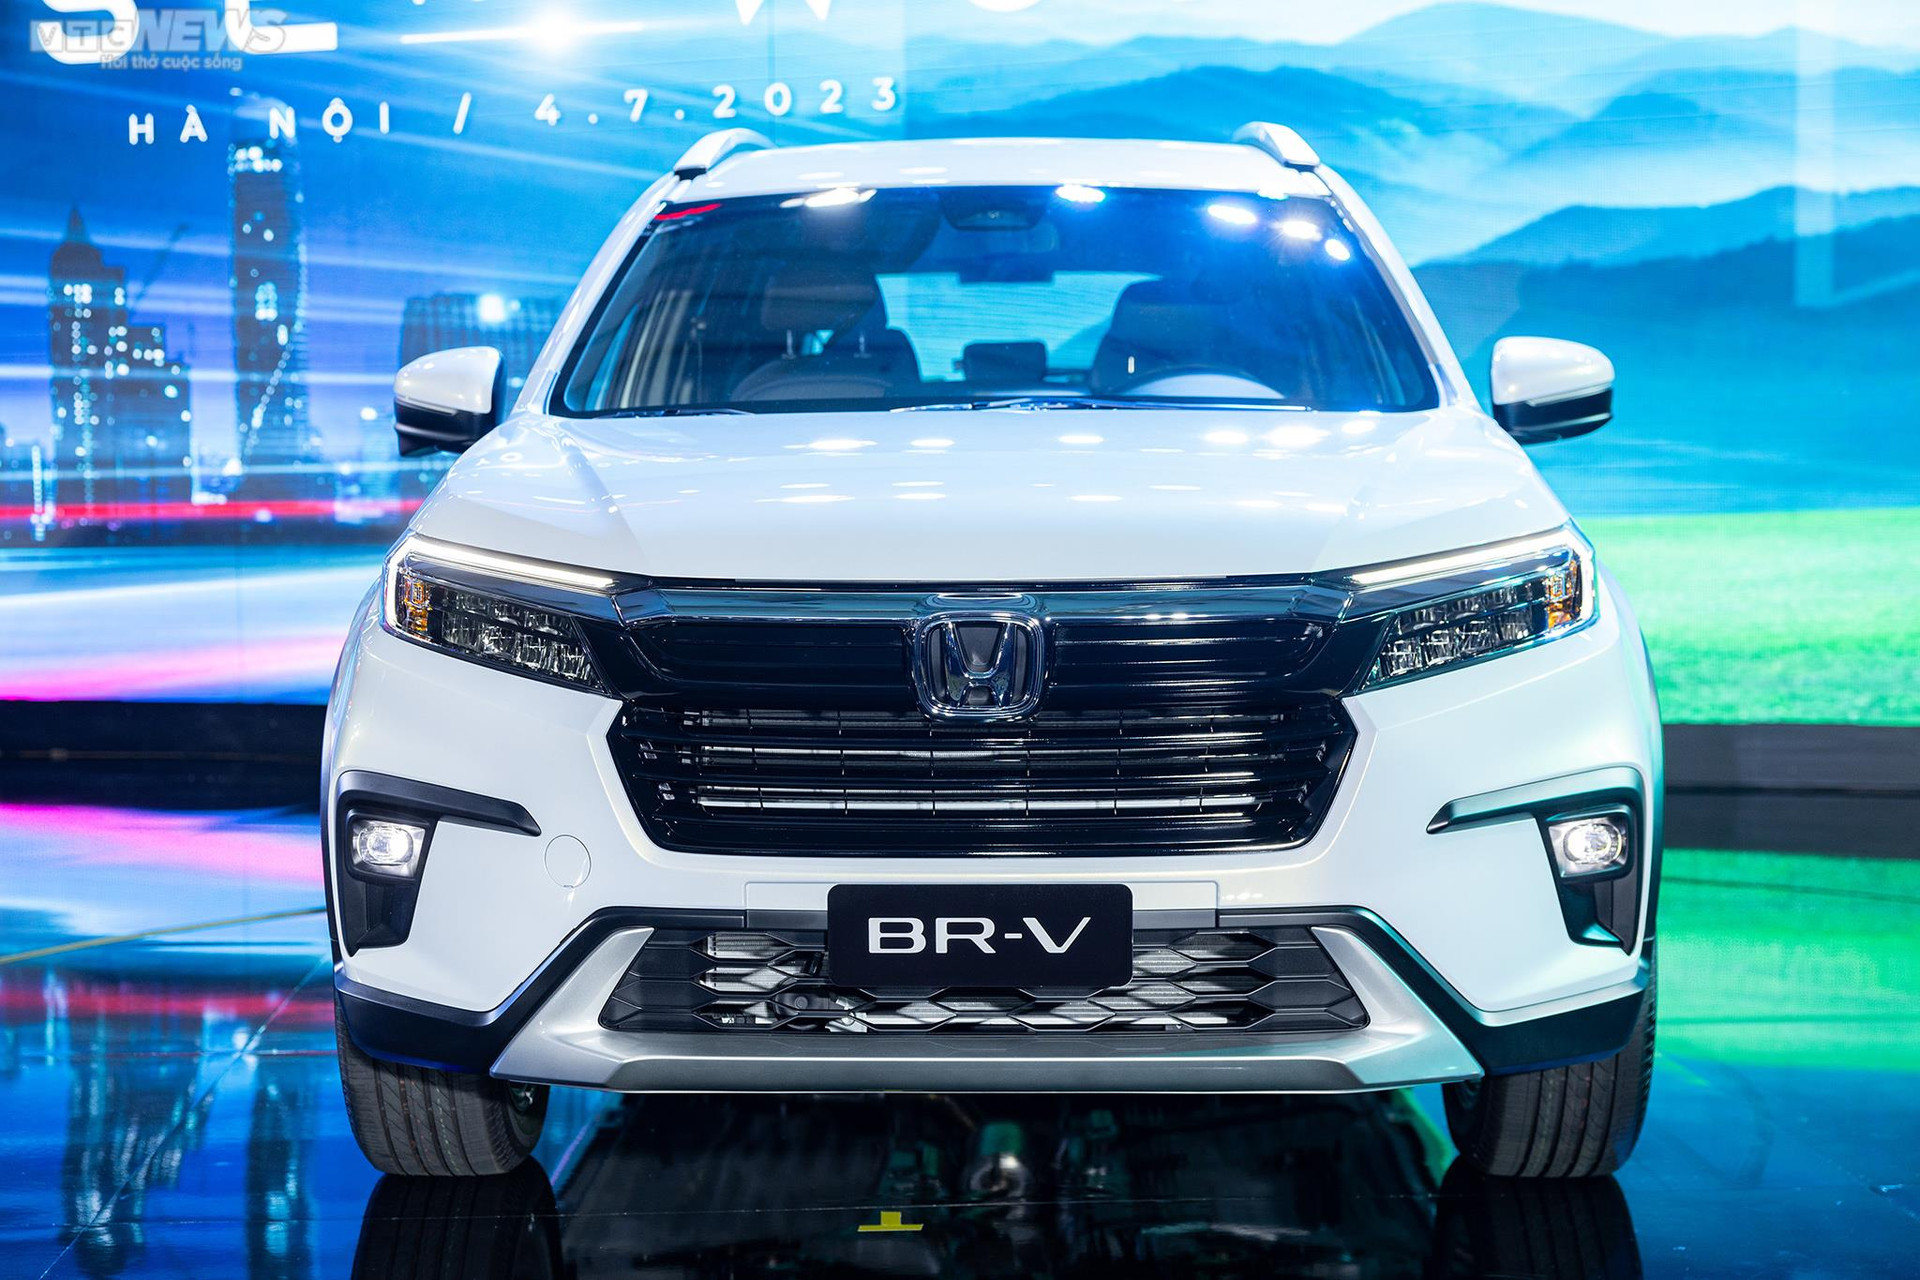 Cận cảnh Honda BR-V - MPV vừa ra mắt ở Việt Nam, giá từ 661 triệu đồng - 2